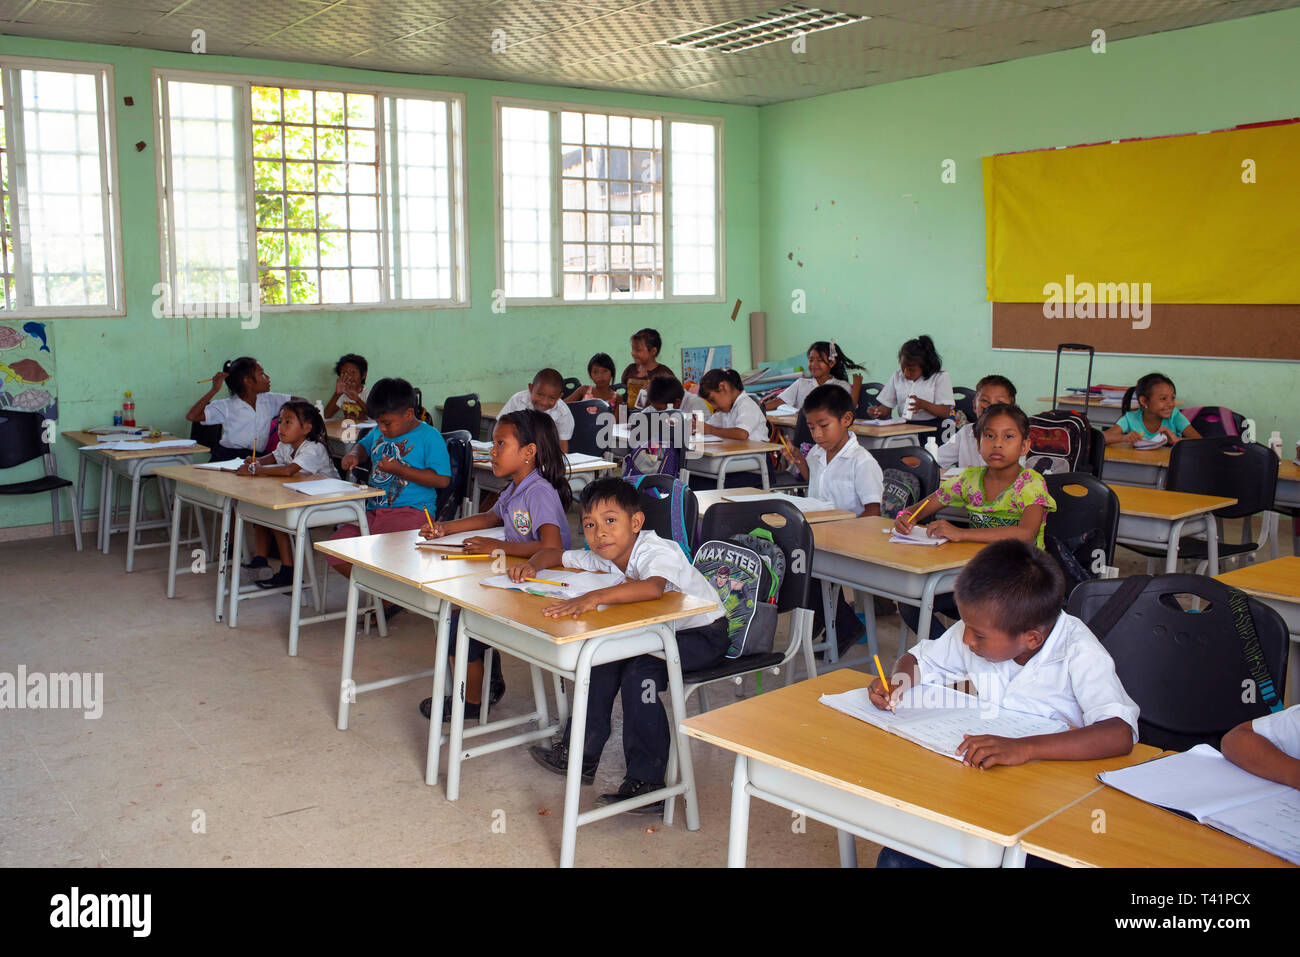 Grundschule Klassenzimmer mit Kuna Studenten. Carti Insel; eine der Guna Yala indigenen Dörfern. Redaktionelle Verwendung. San Blas Inseln, Panama, Okt 2018 Stockfoto